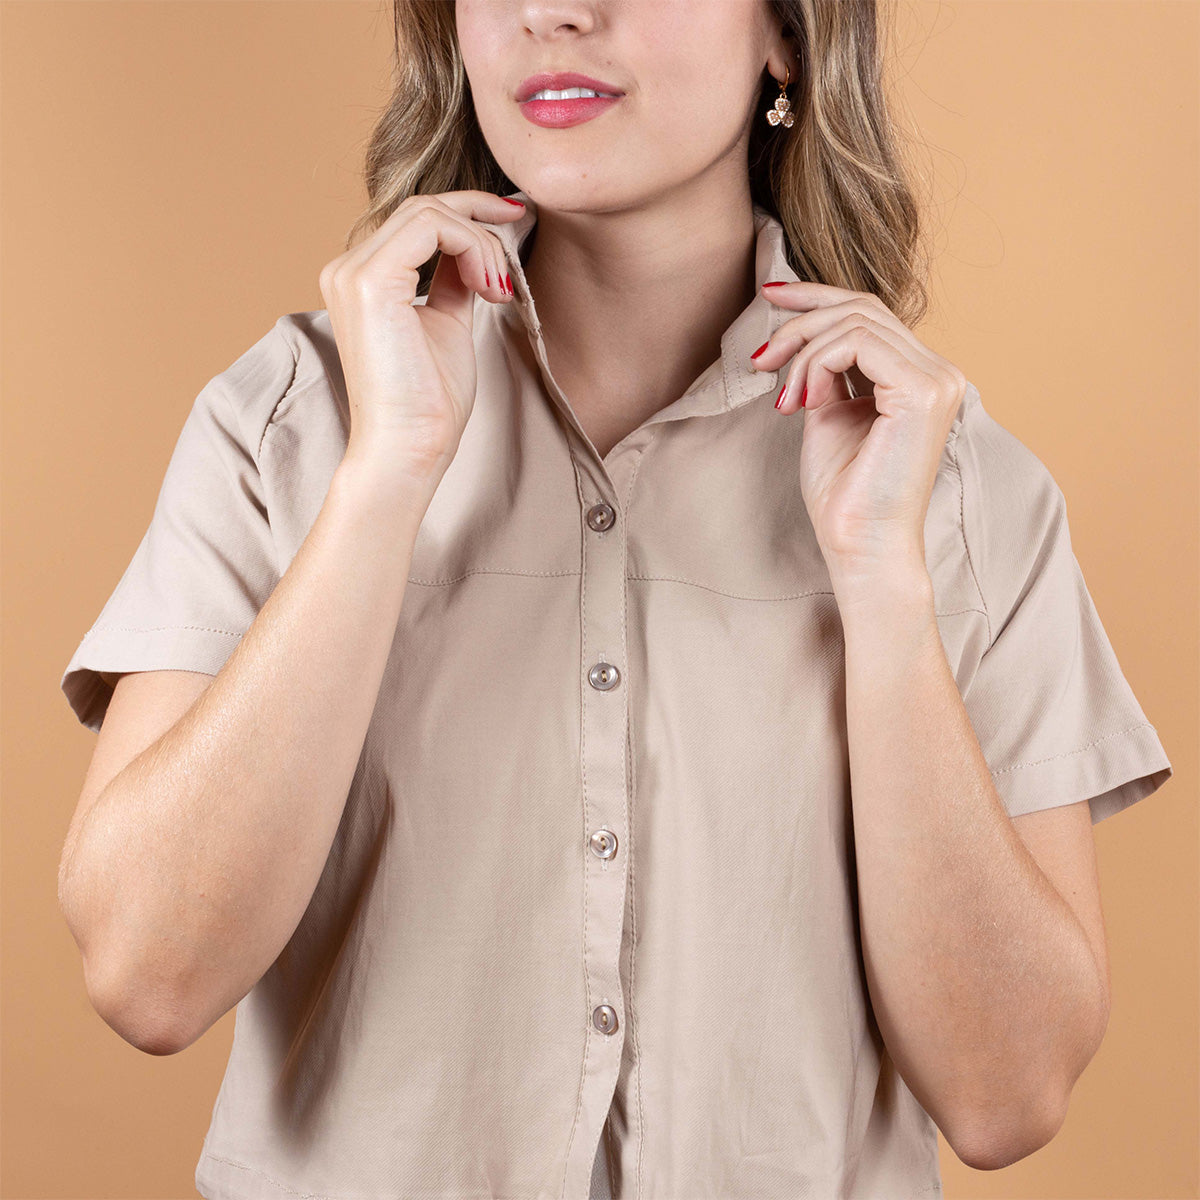 Blusa casual color crema con botones y cuello de solapa